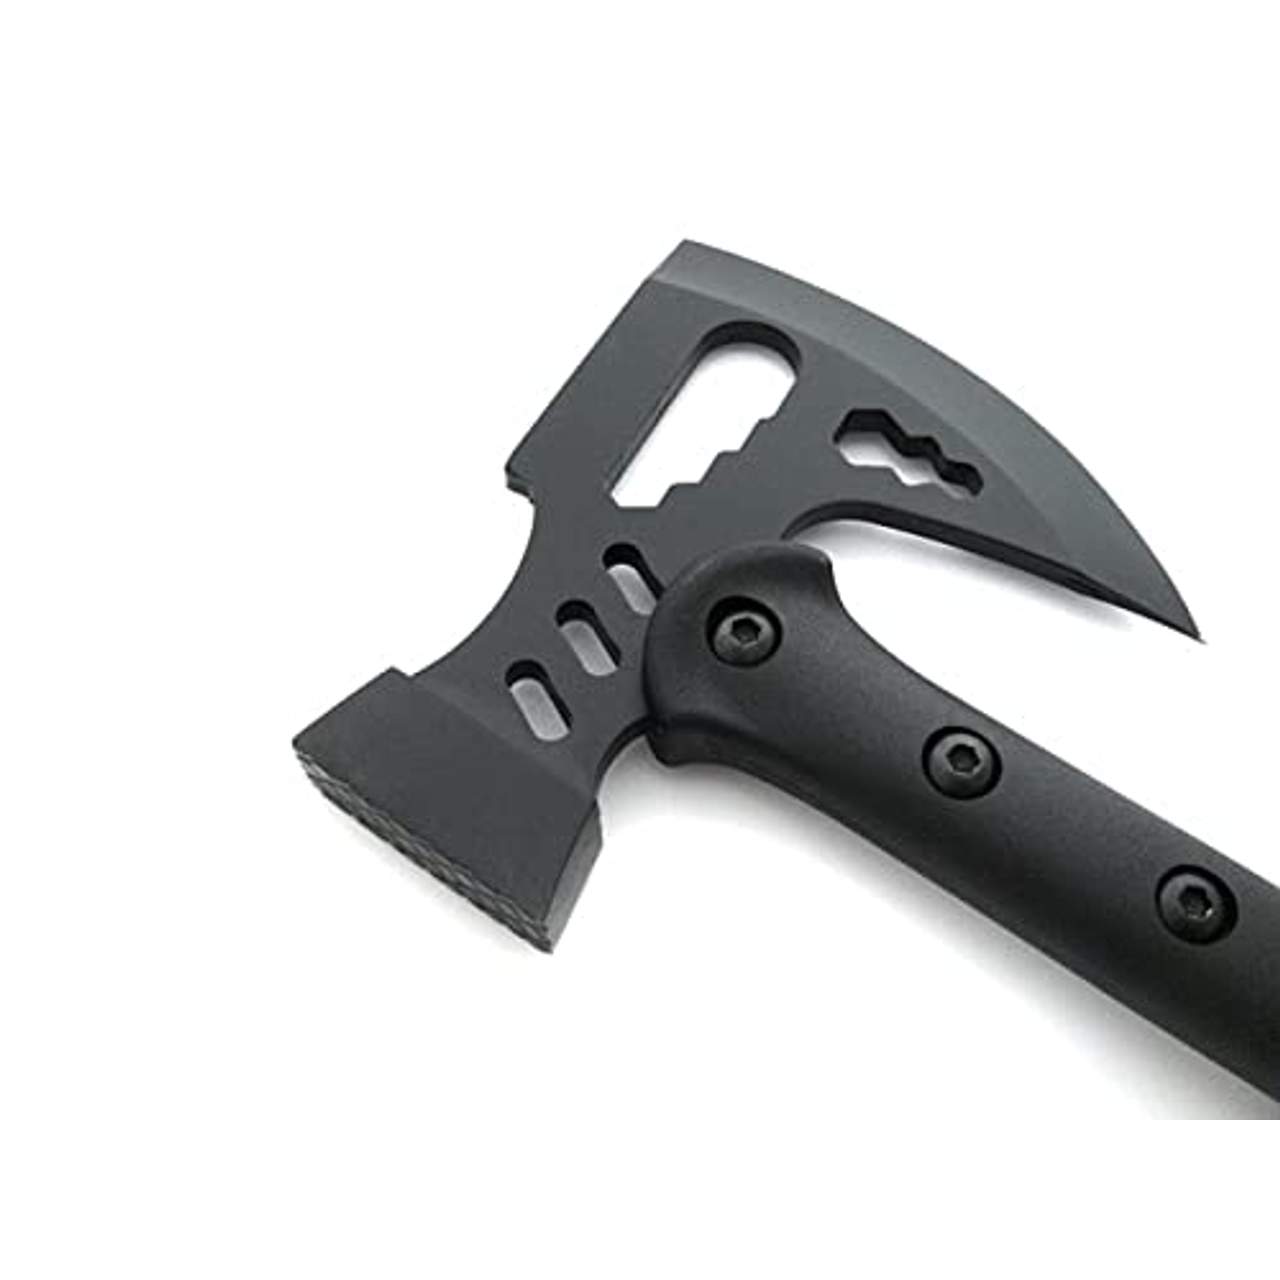 OS4YOU 42cm Black multifunktions Hammer Downrange Tactical